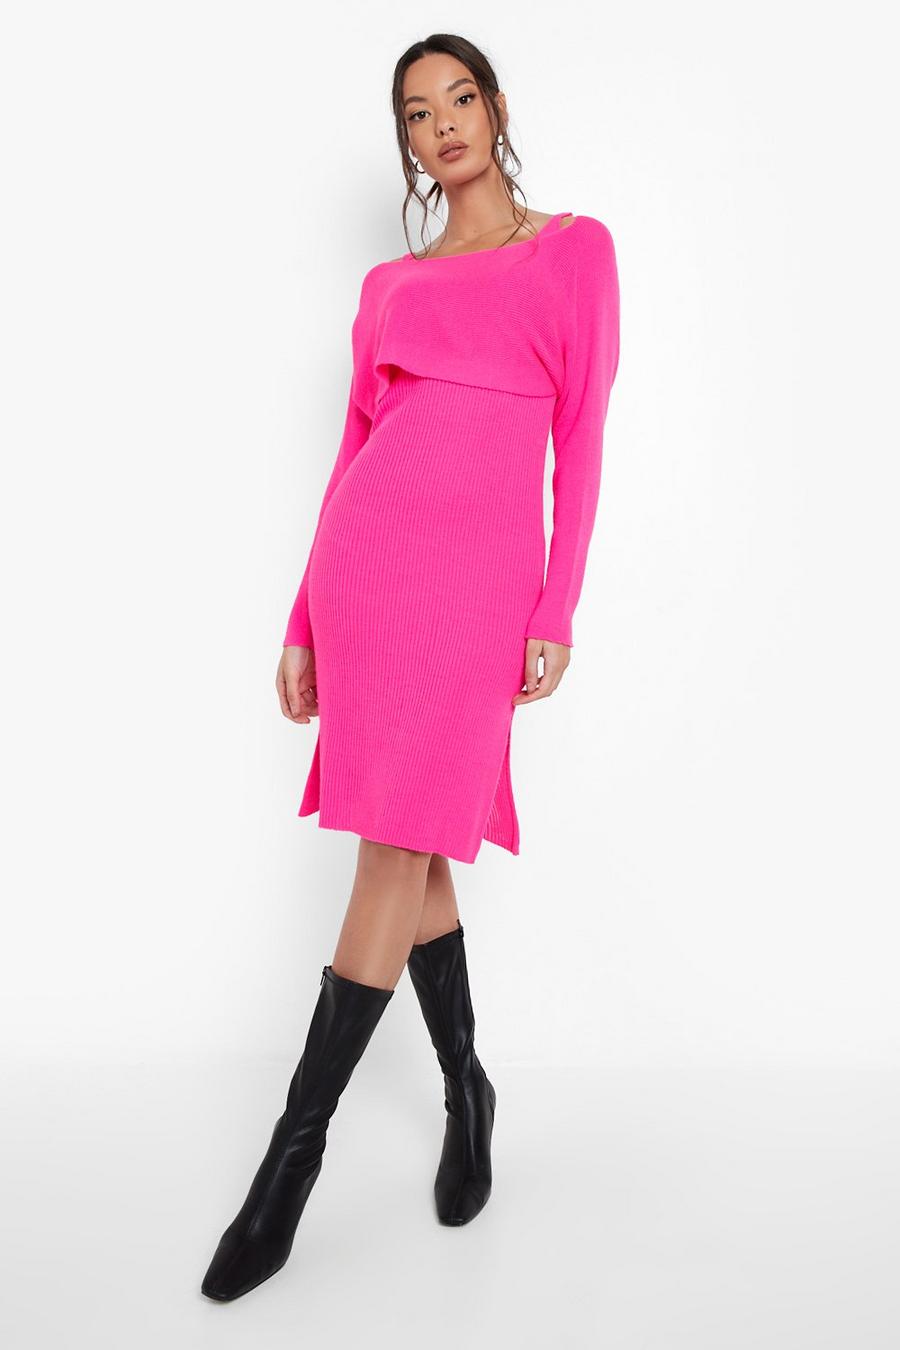 ורוד rosa סט של שמלה טופ קרופ גבוה במיוחד עם שכבה עליונה